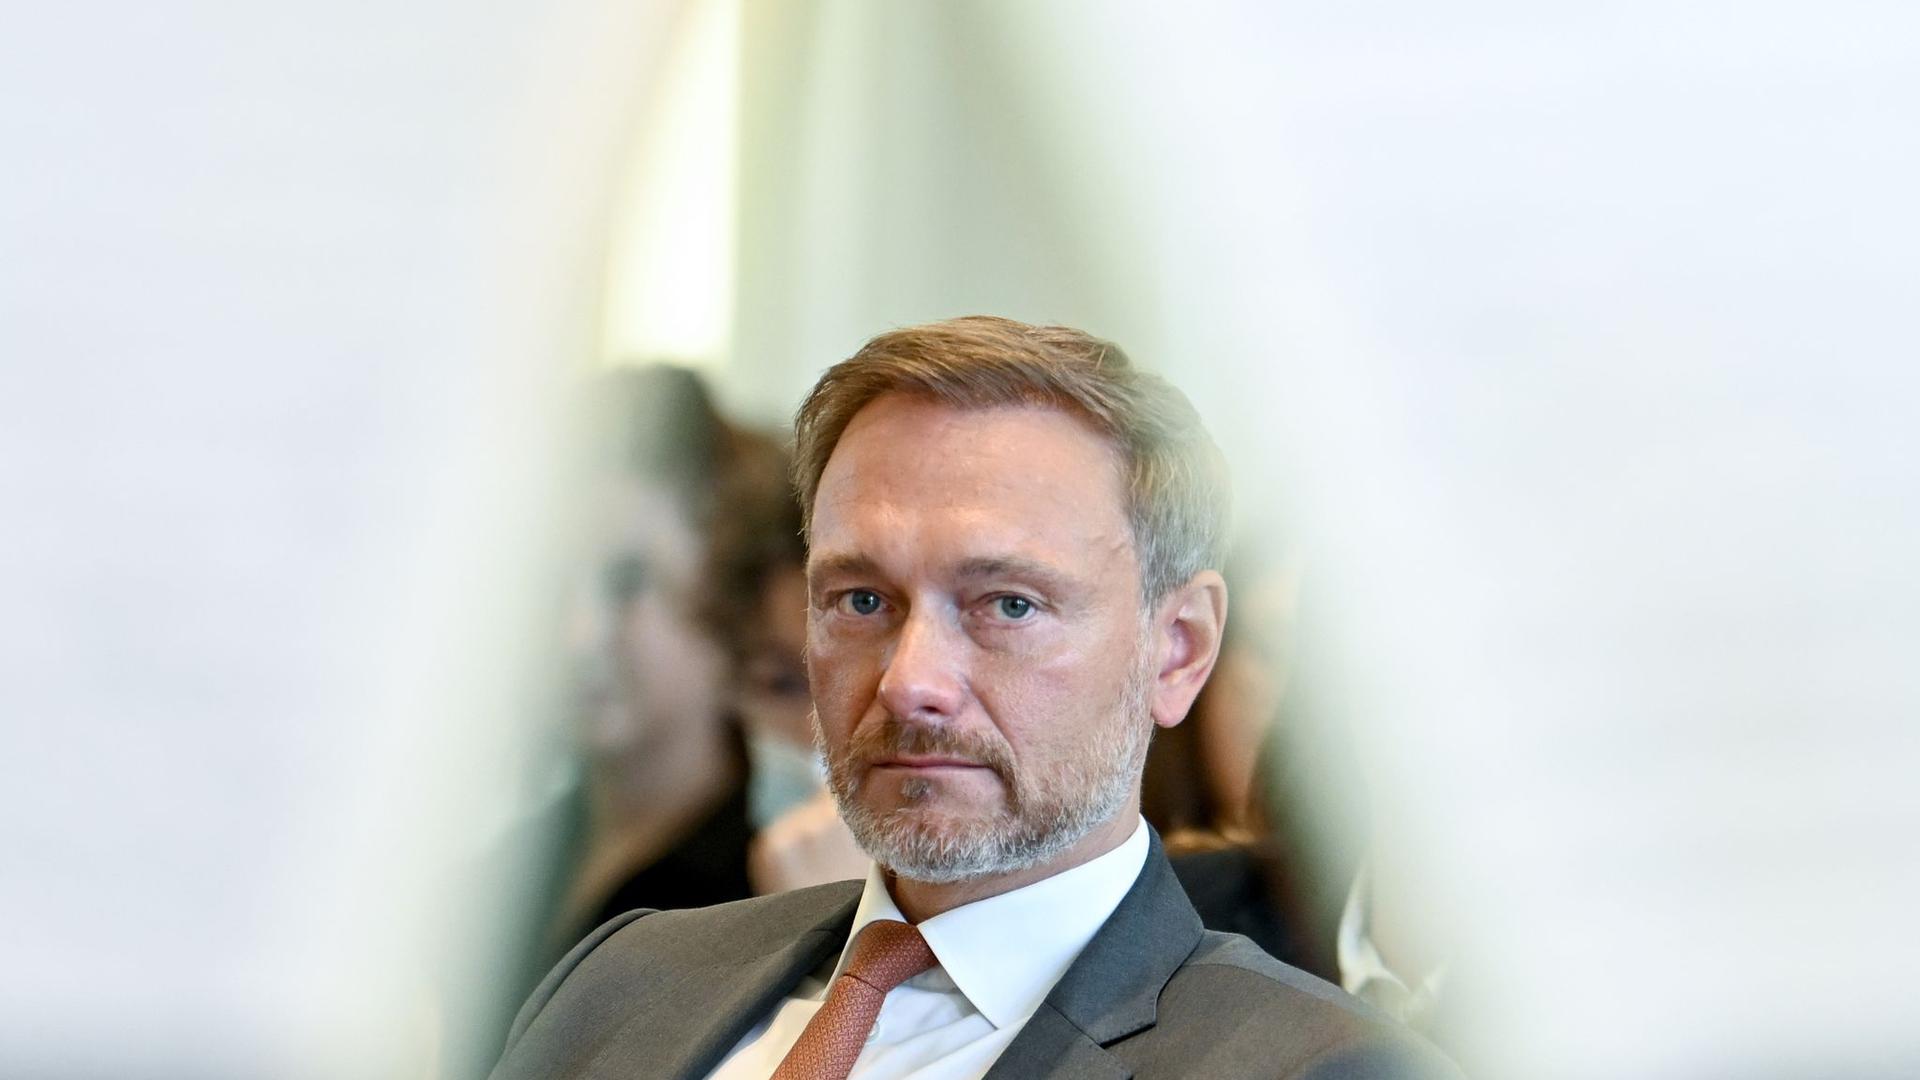 Finanzminister Christian Lindner weist den Vorwurf zurück, mitten in den Koalitionsverhandlungen engen Kontakt mit Porsche gepflegt zu haben.